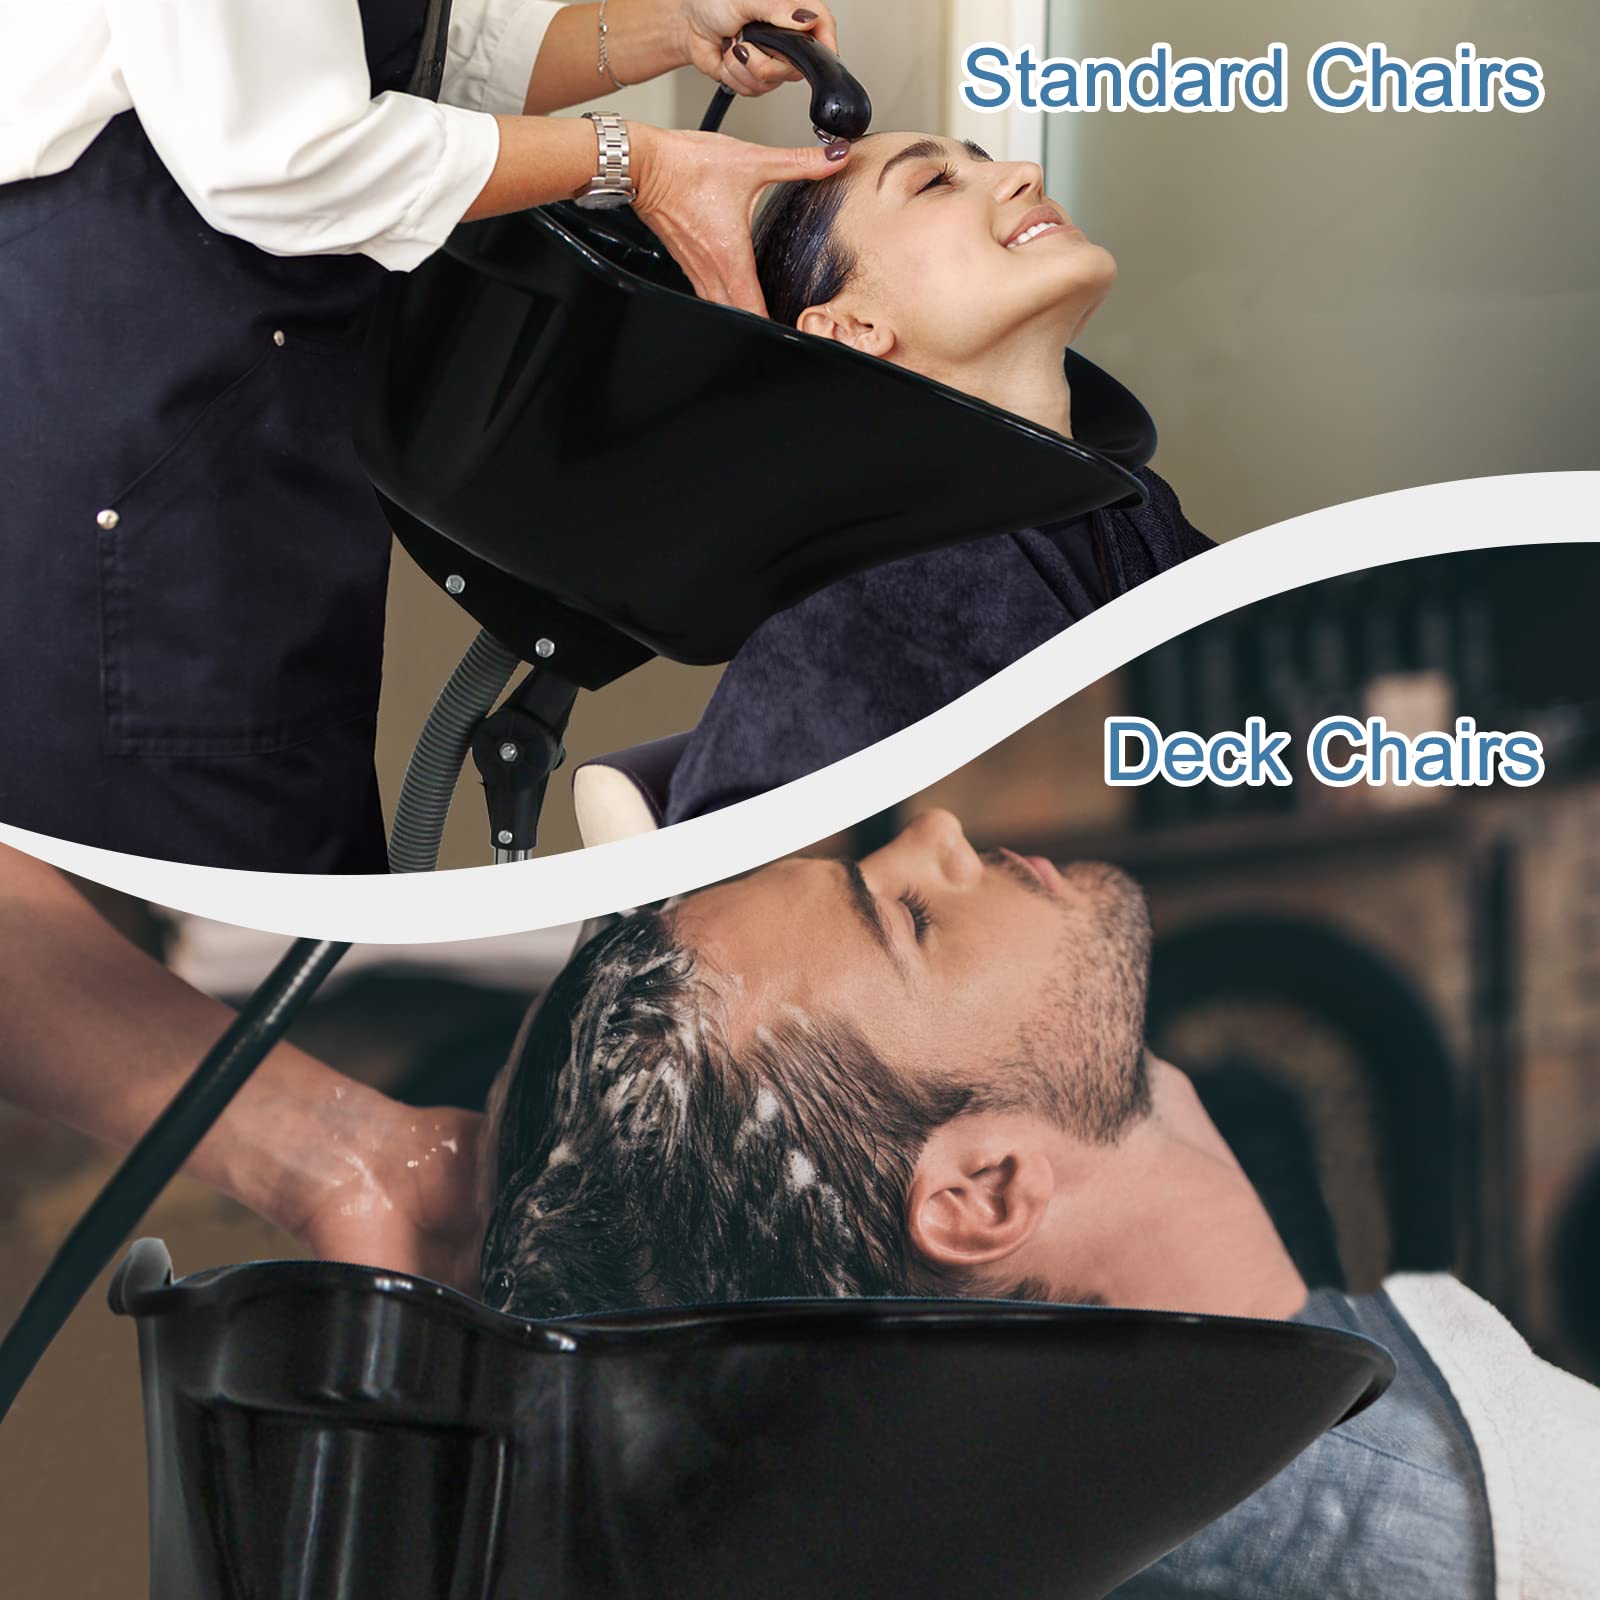 Height Adjustable Portable Salon Deep Shampoo Basin Sink Hair Treatment Bowl with Drain Hose- Black